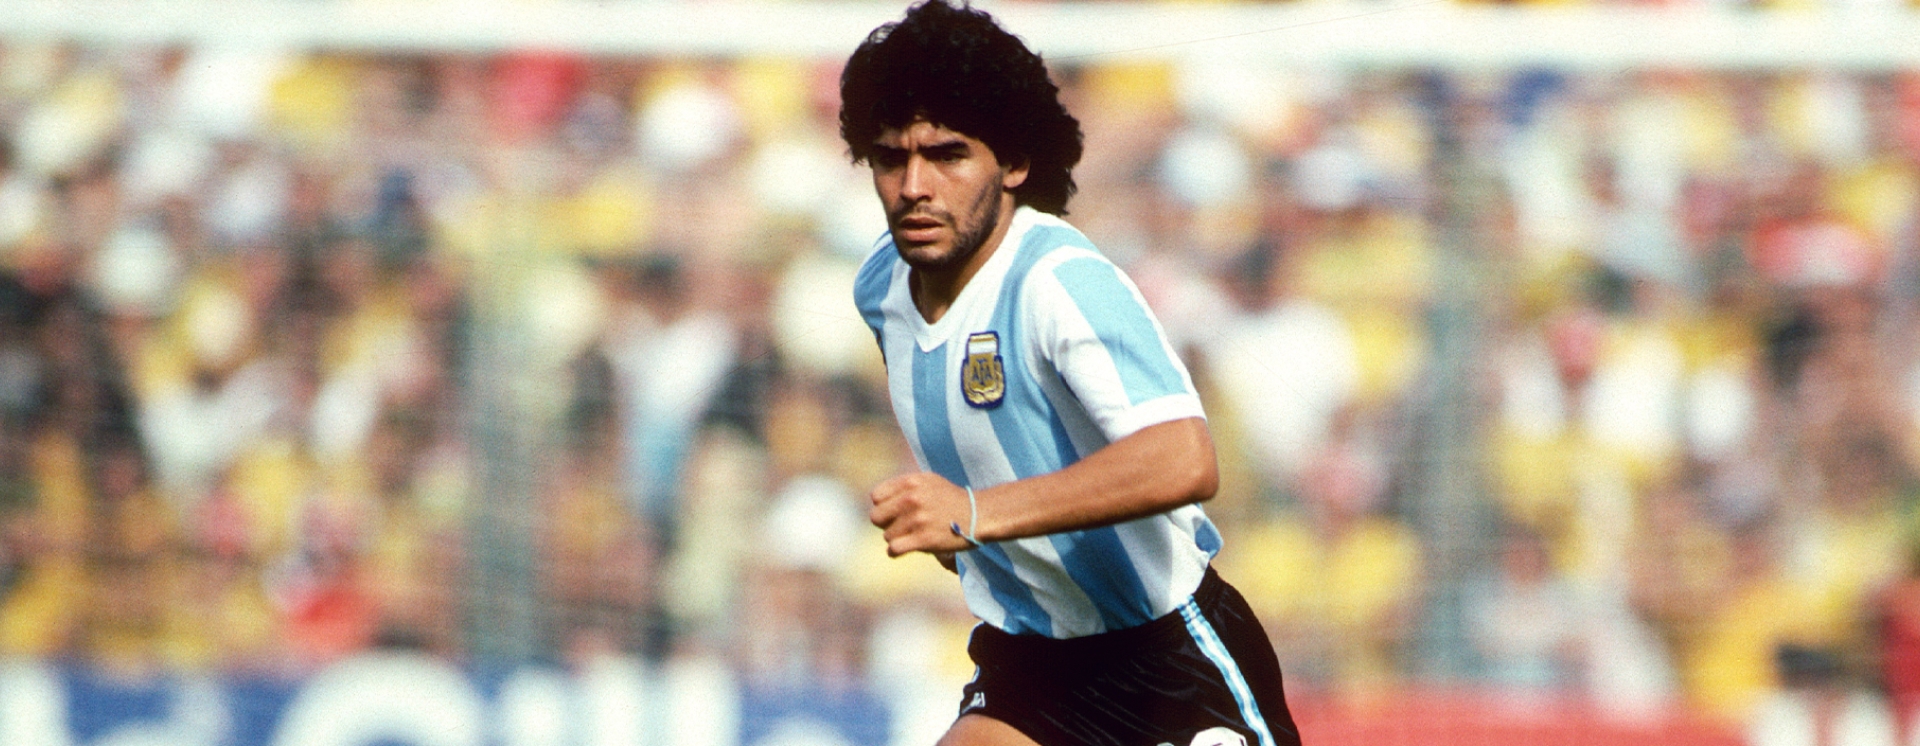 Maradona: El más grande